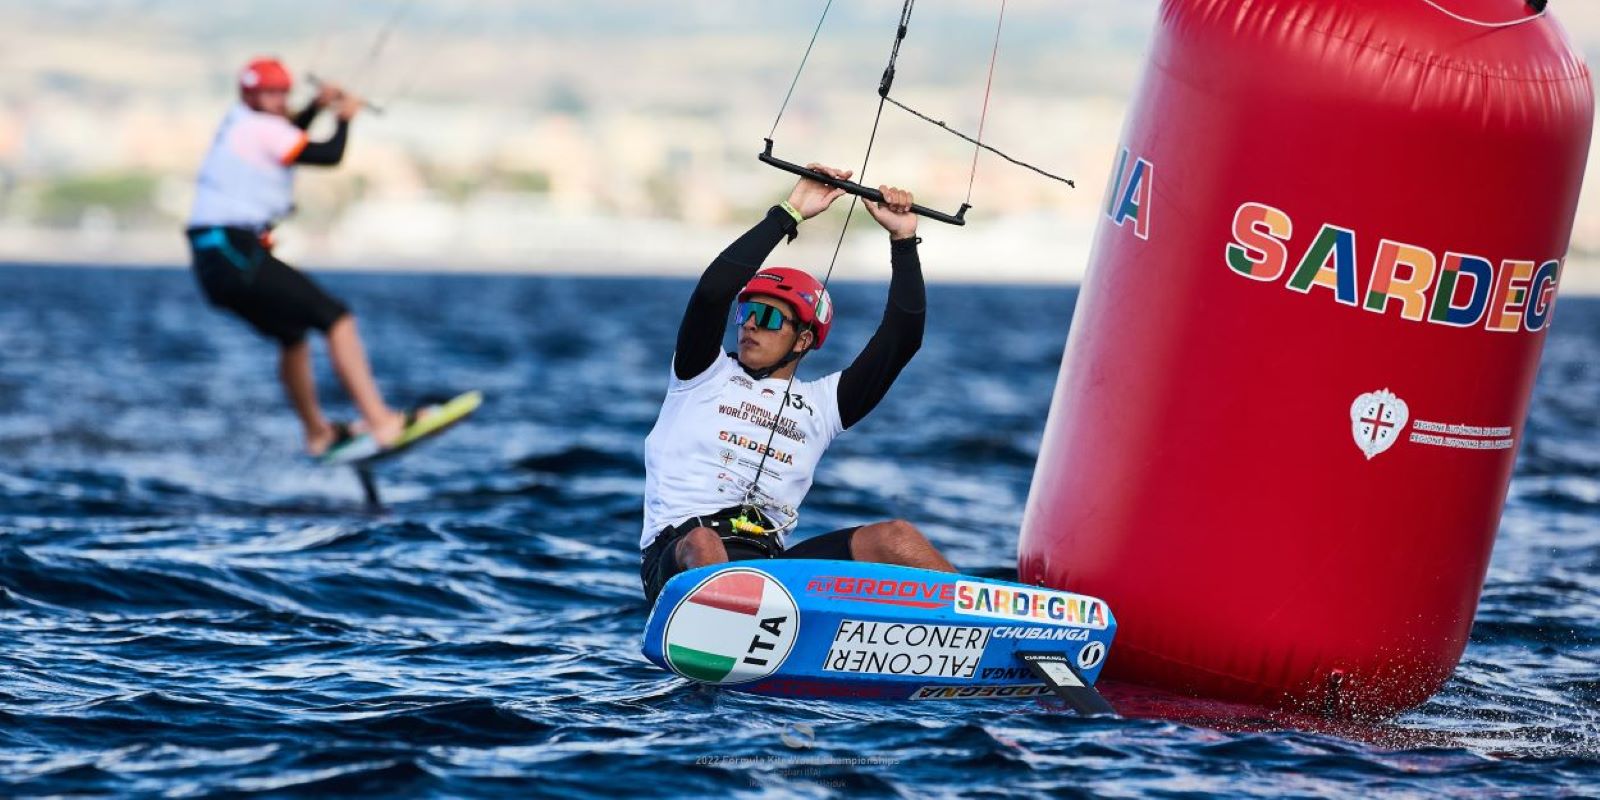 Kite Surf, Sardinia Grand Slam, il campione europeo Pianosi: “Adoro questo evento, qui mi sento a casa”